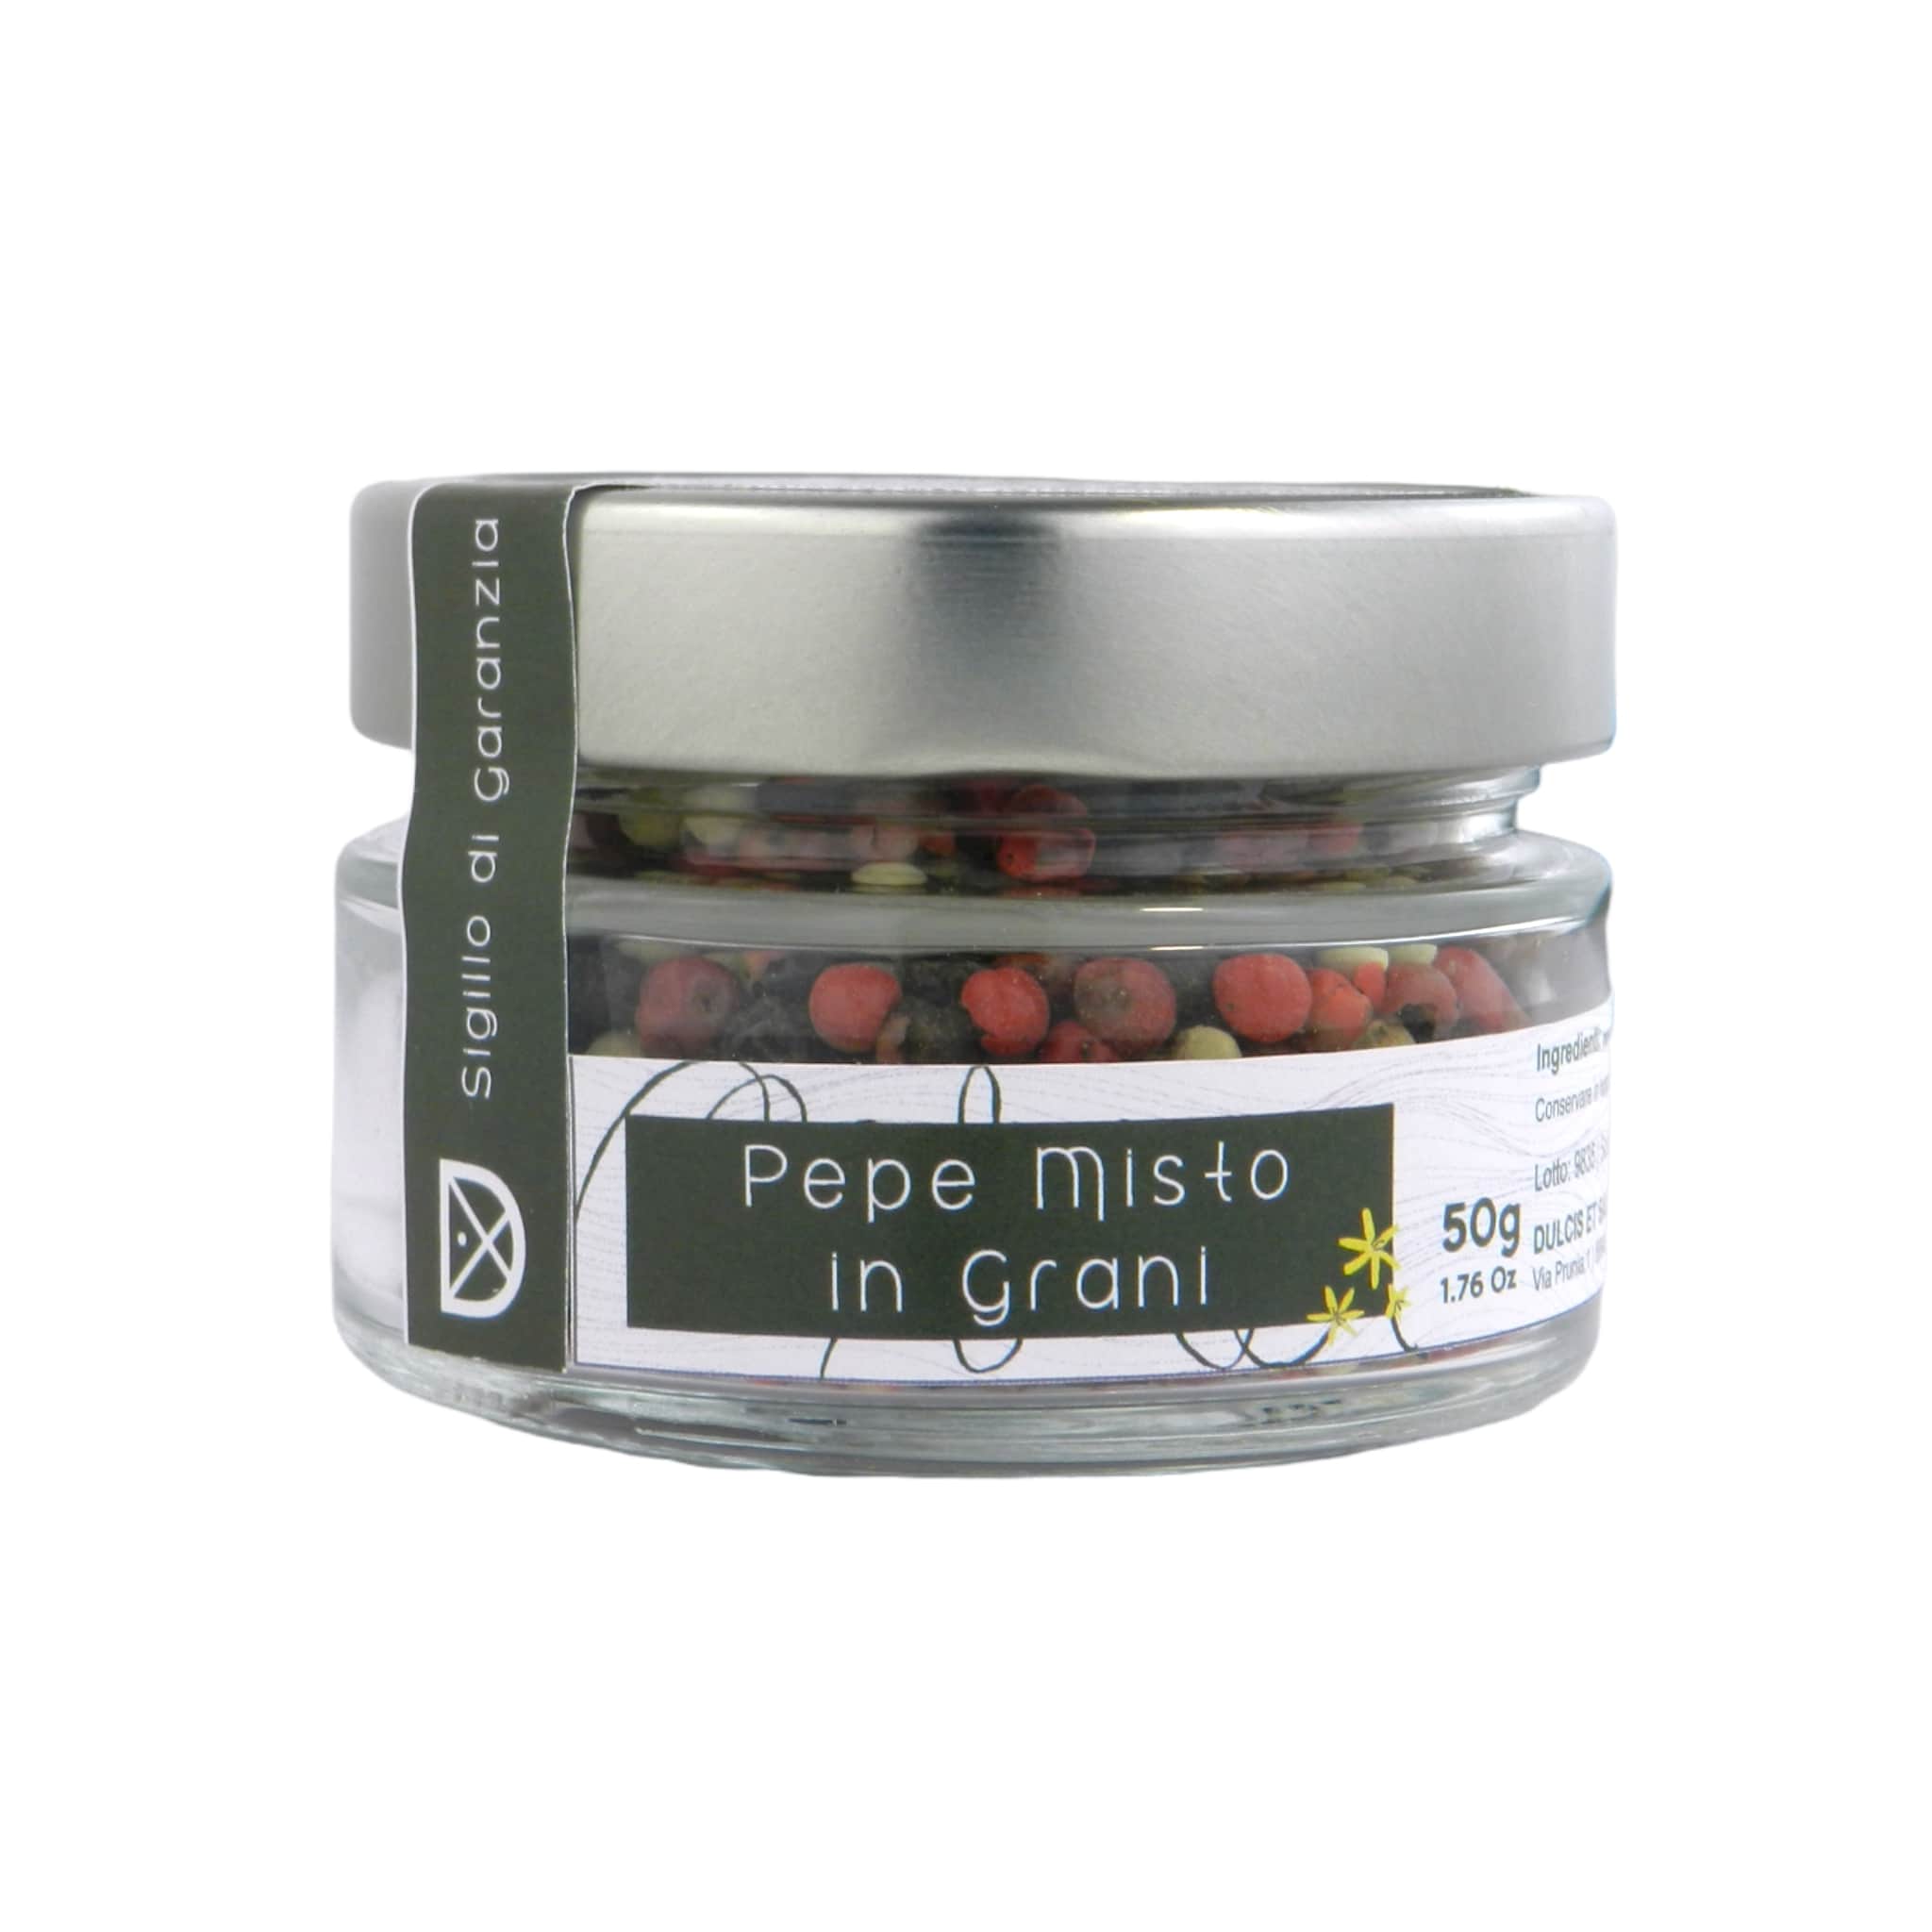 Pepe Misto in grani (bianco, rosa, nero) 50 g - Casafolino.com